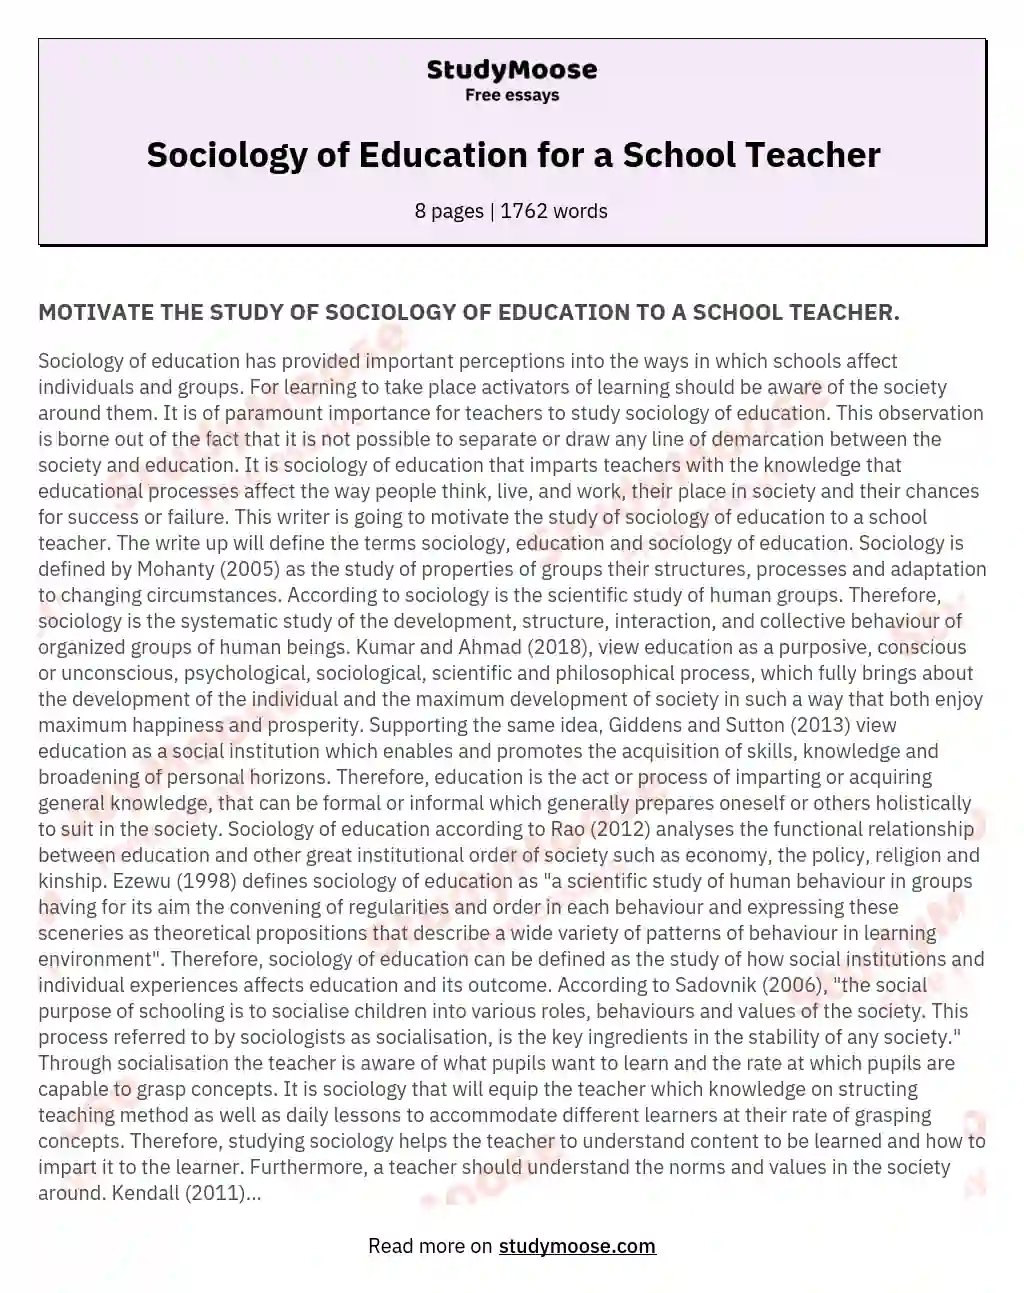 Sociology of Education for a School Teacher essay